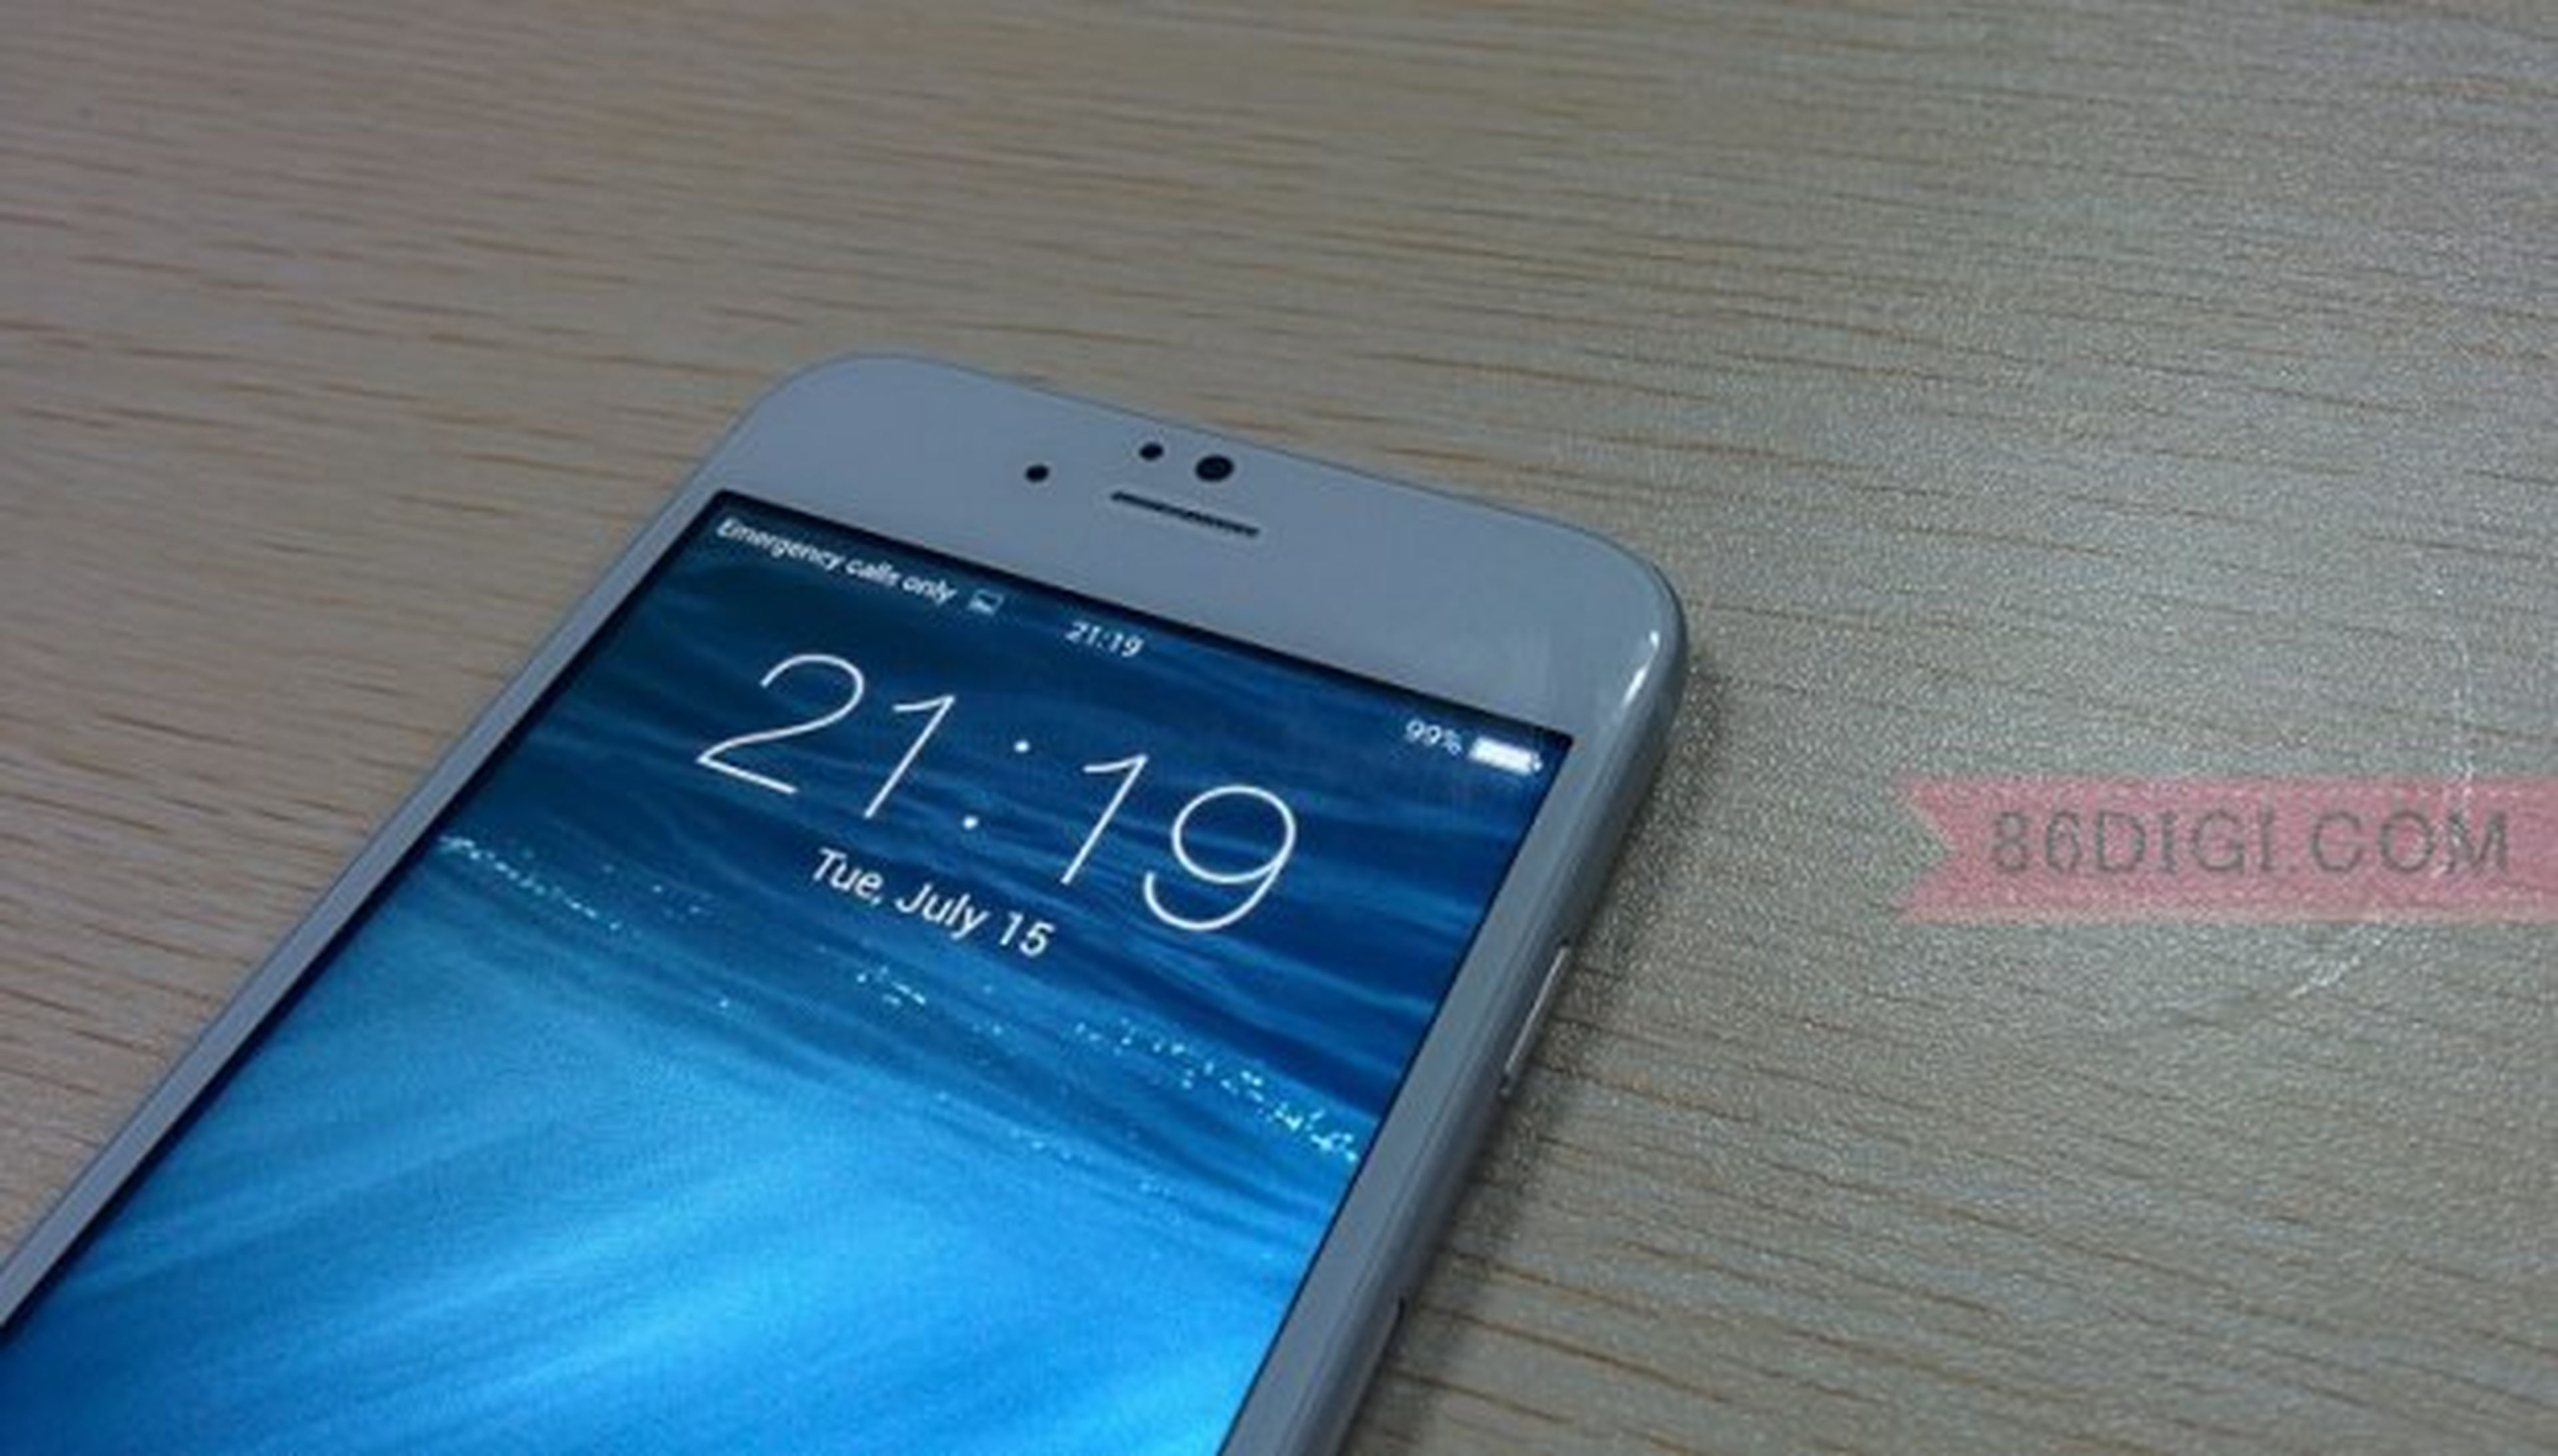 clon chino iPhone 6